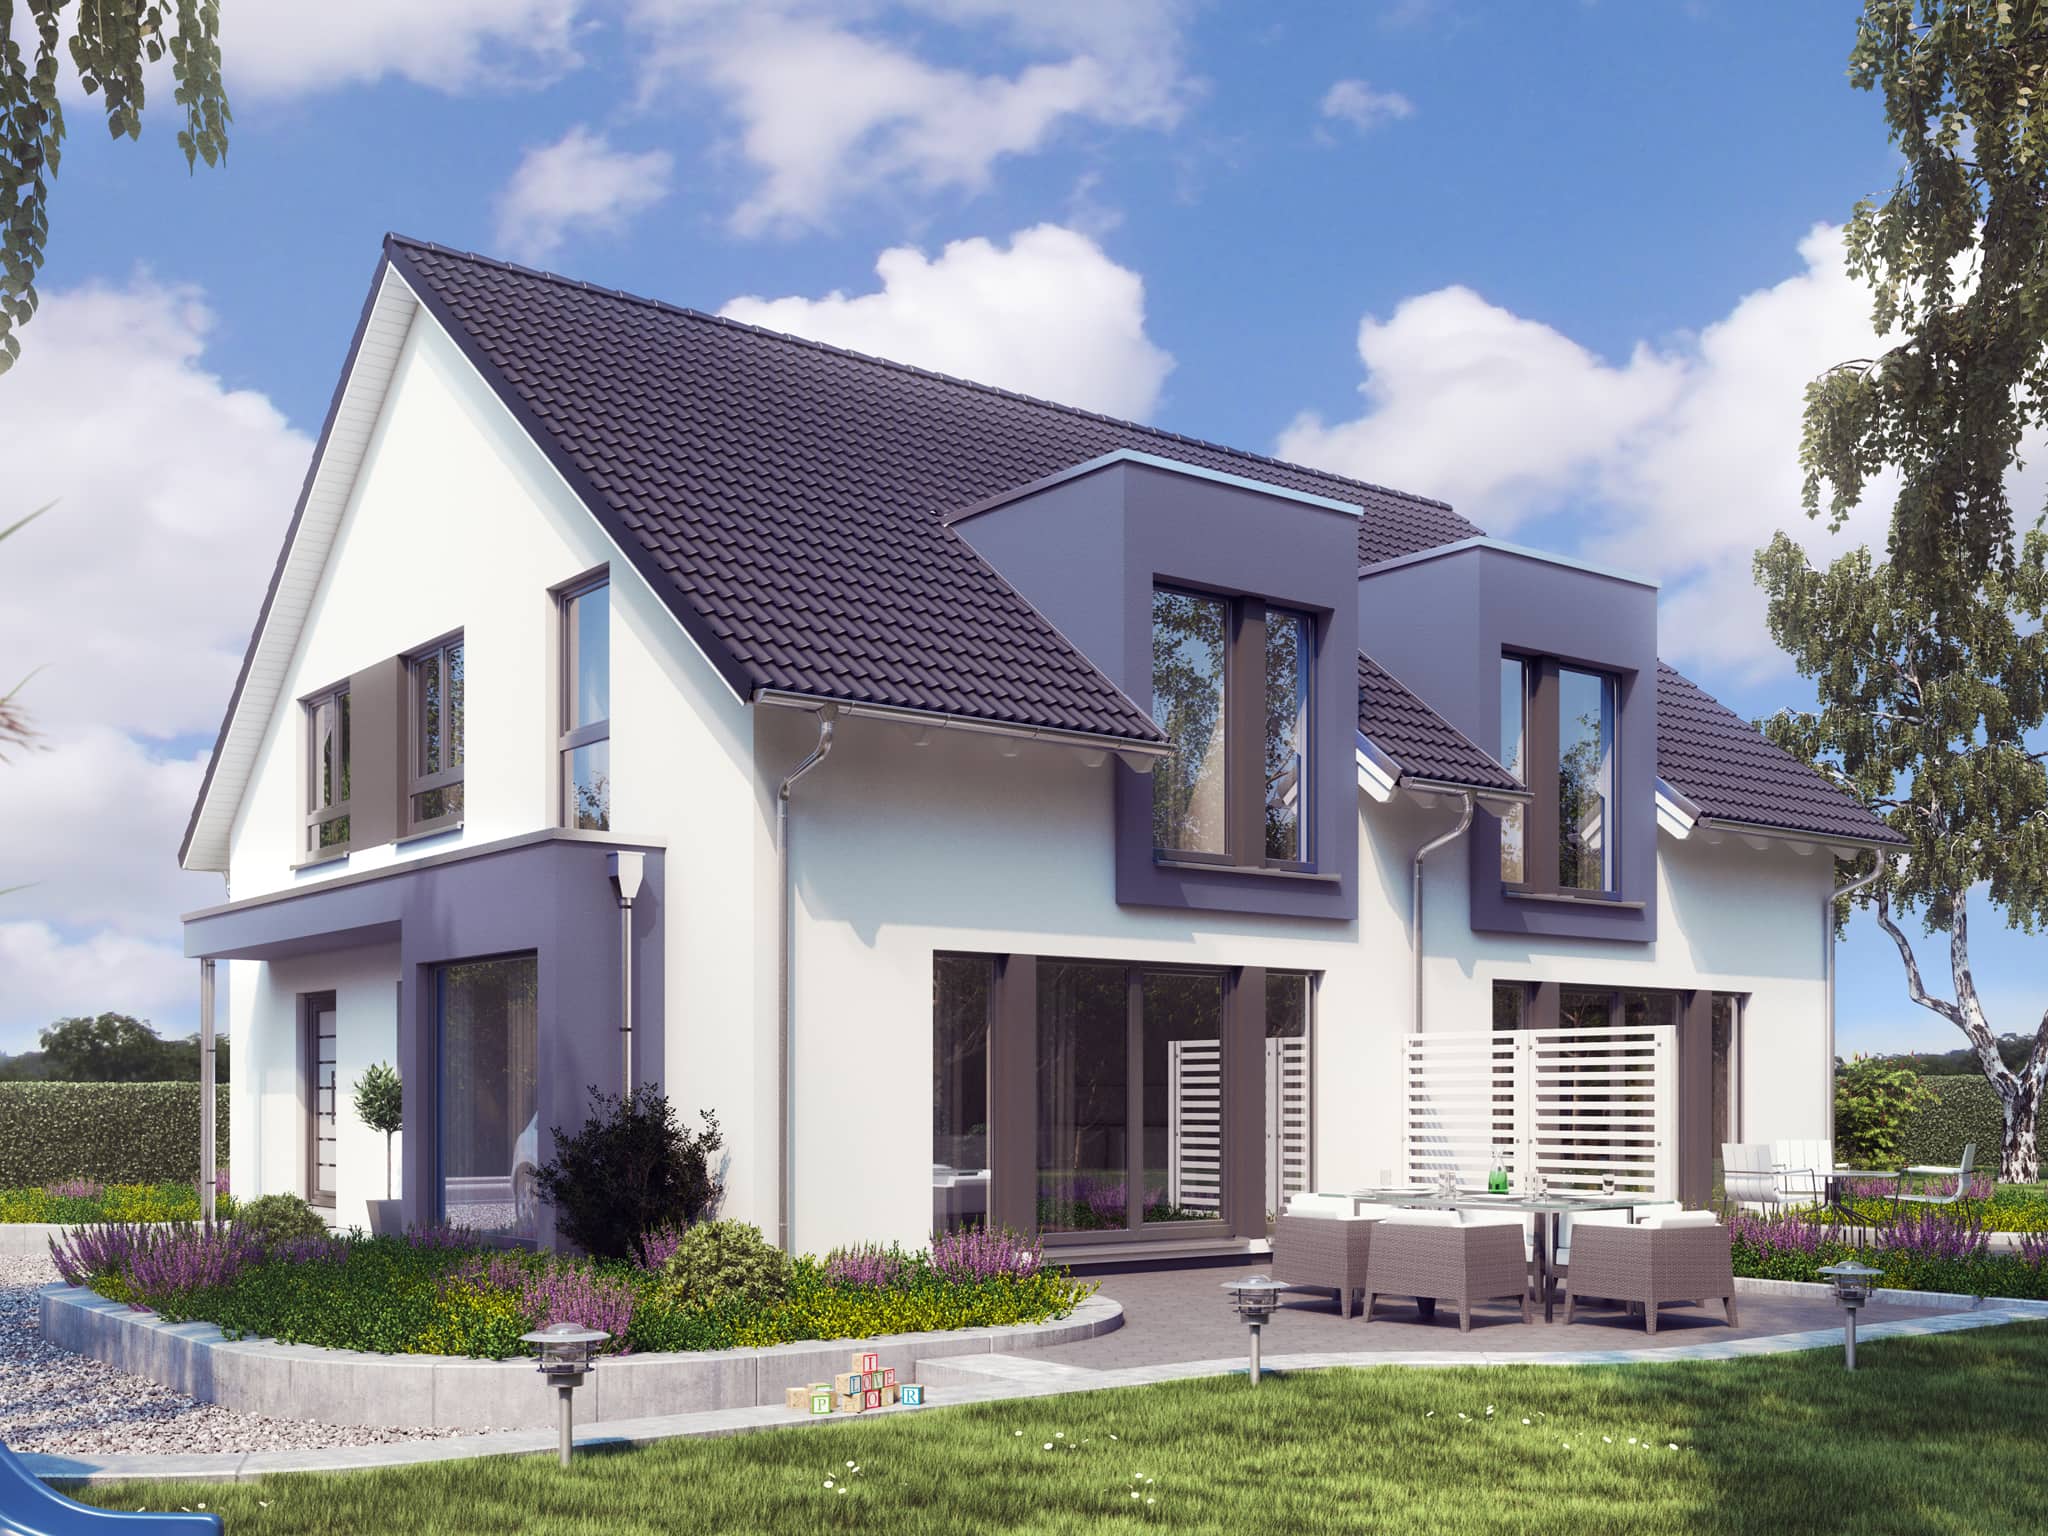 Modernes Doppelhaus & Zweifamilienhaus nebeneinander - Haus bauen Ideen Fertighaus SOLUTION 242 V3 von Living Haus - HausbauDirekt.de